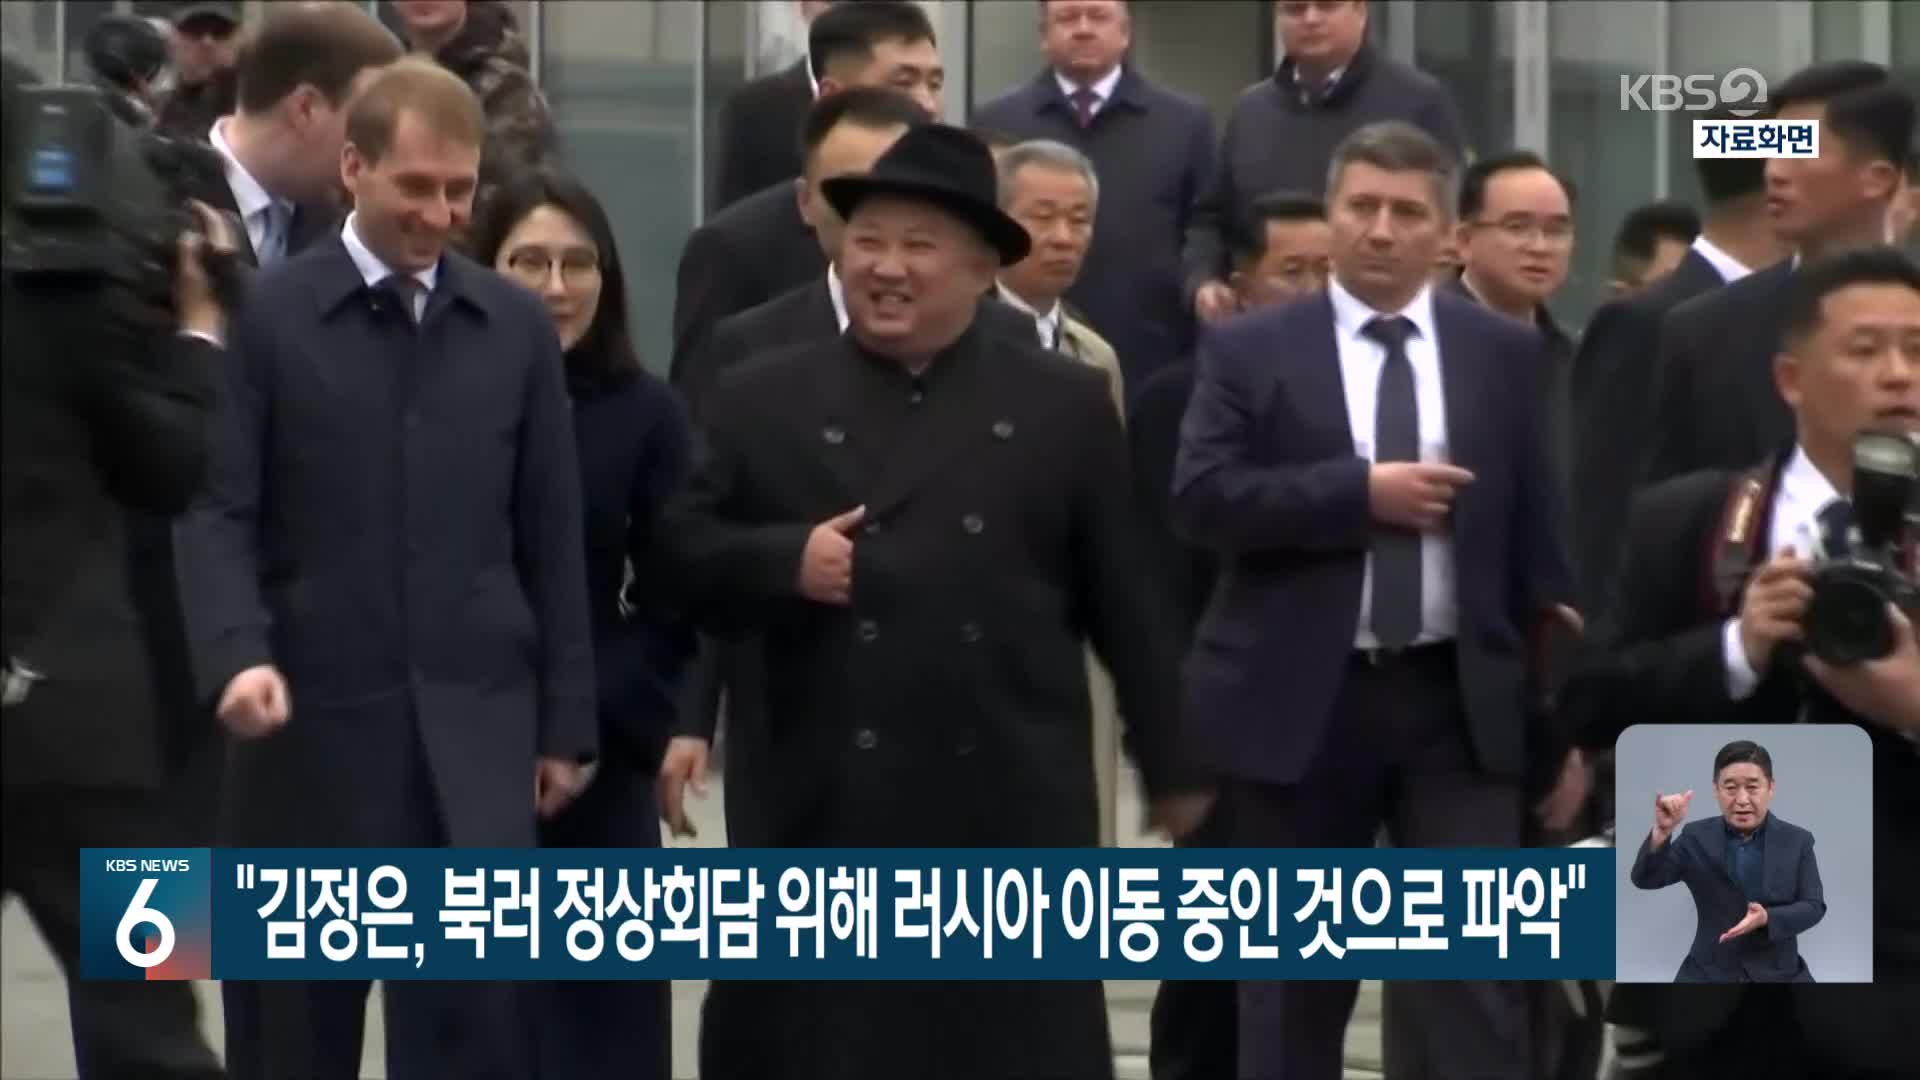 “김정은, 북러 정상회담 위해 러시아 이동 중인 것으로 파악”